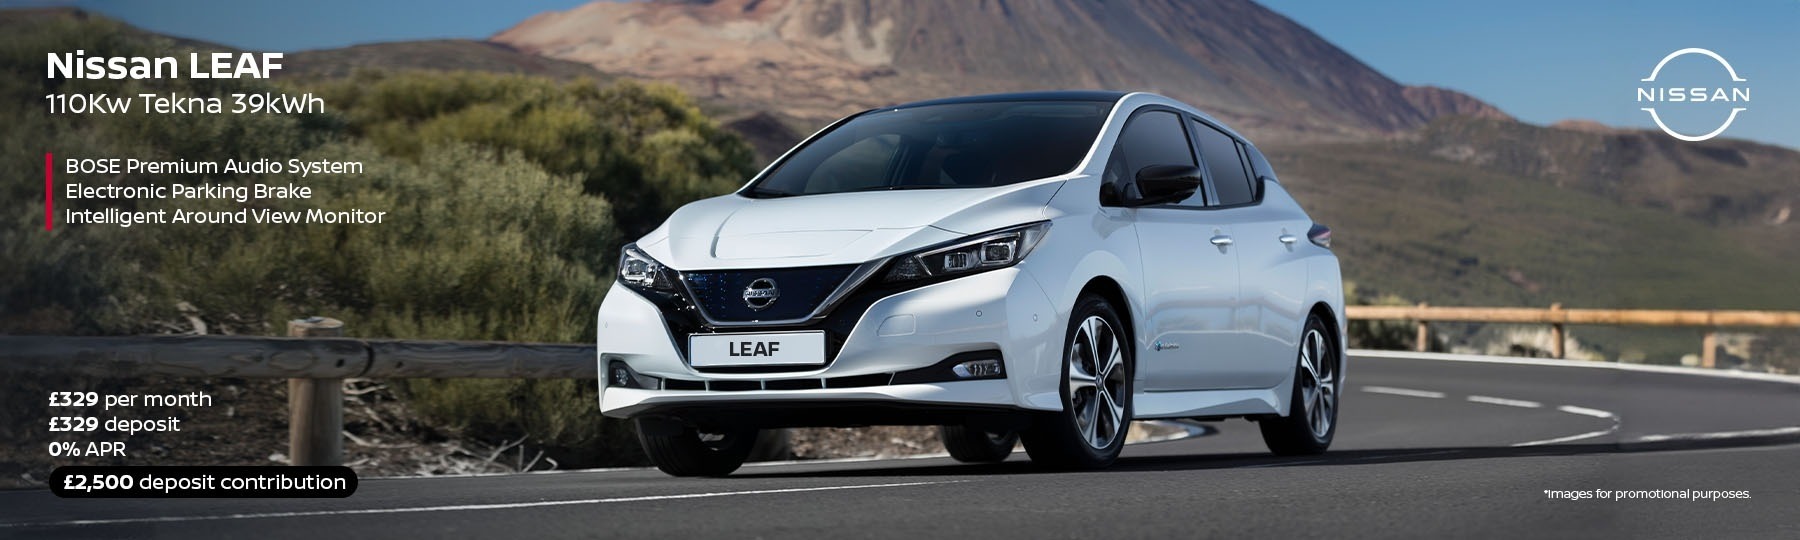 Nissan LEAF New Car Offer